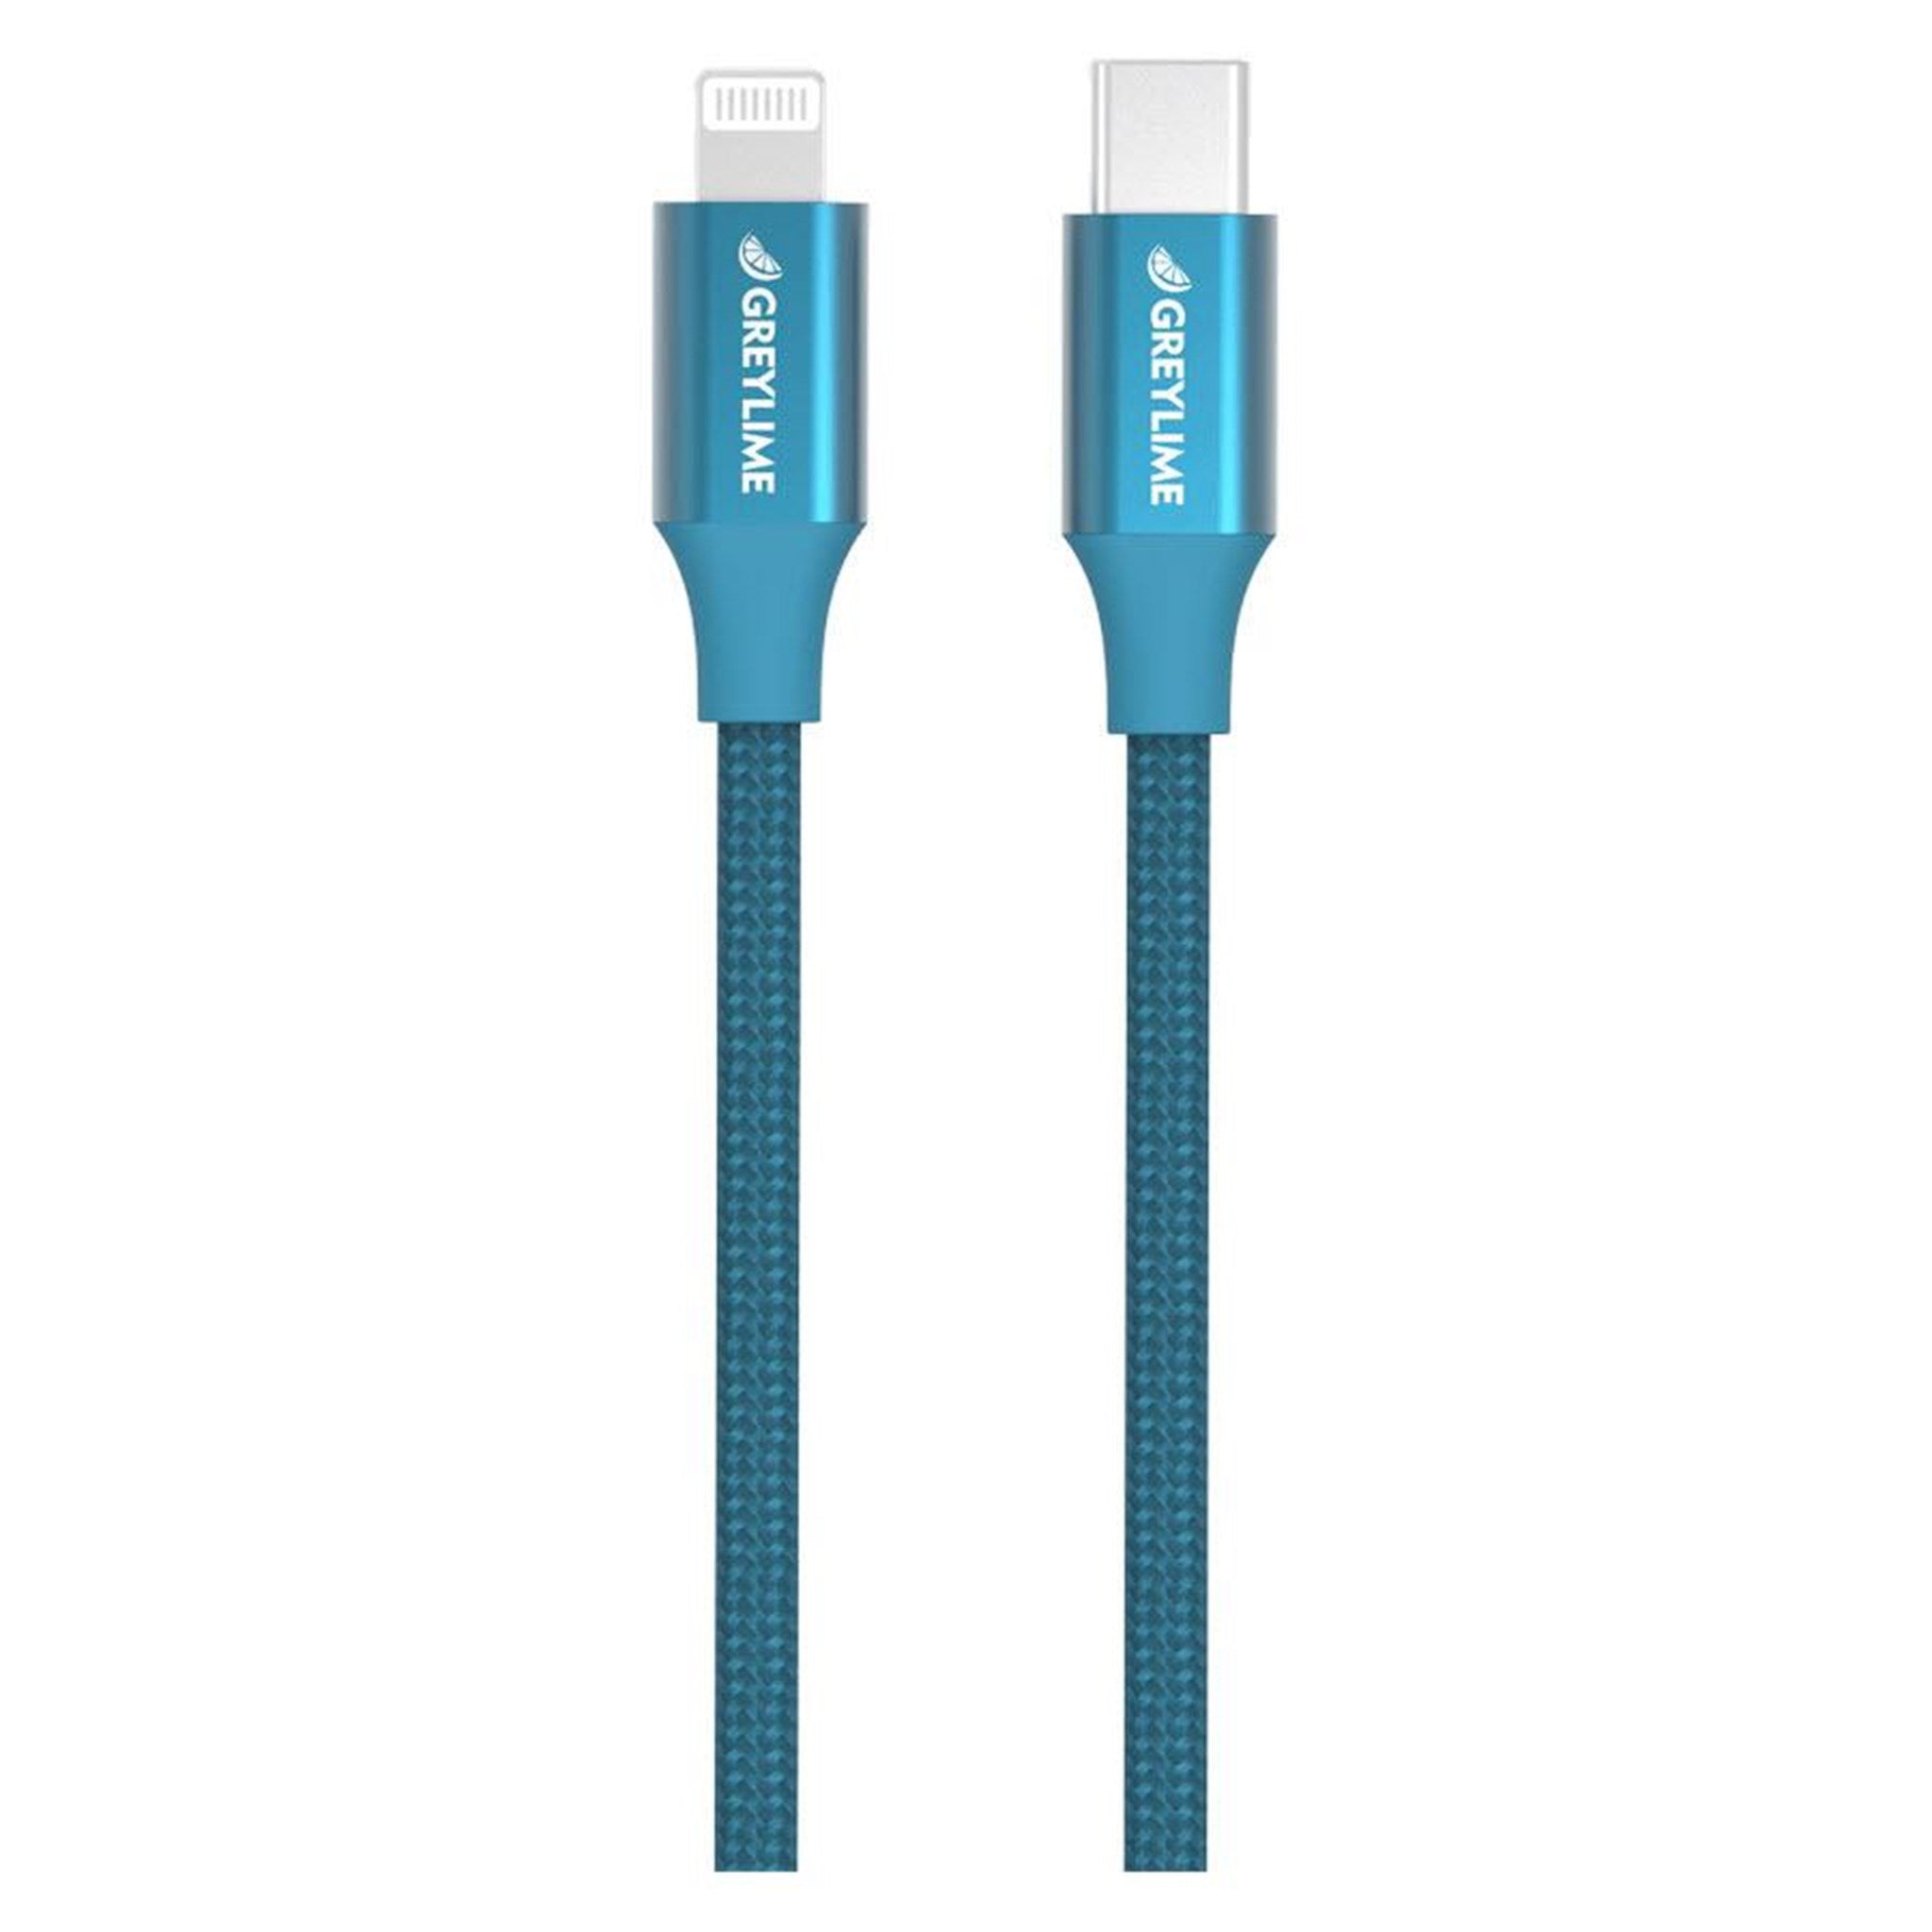 Billede af GreyLime Braided USB-C til MFi Lightning Kabel Blå 2 m hos GreyLime